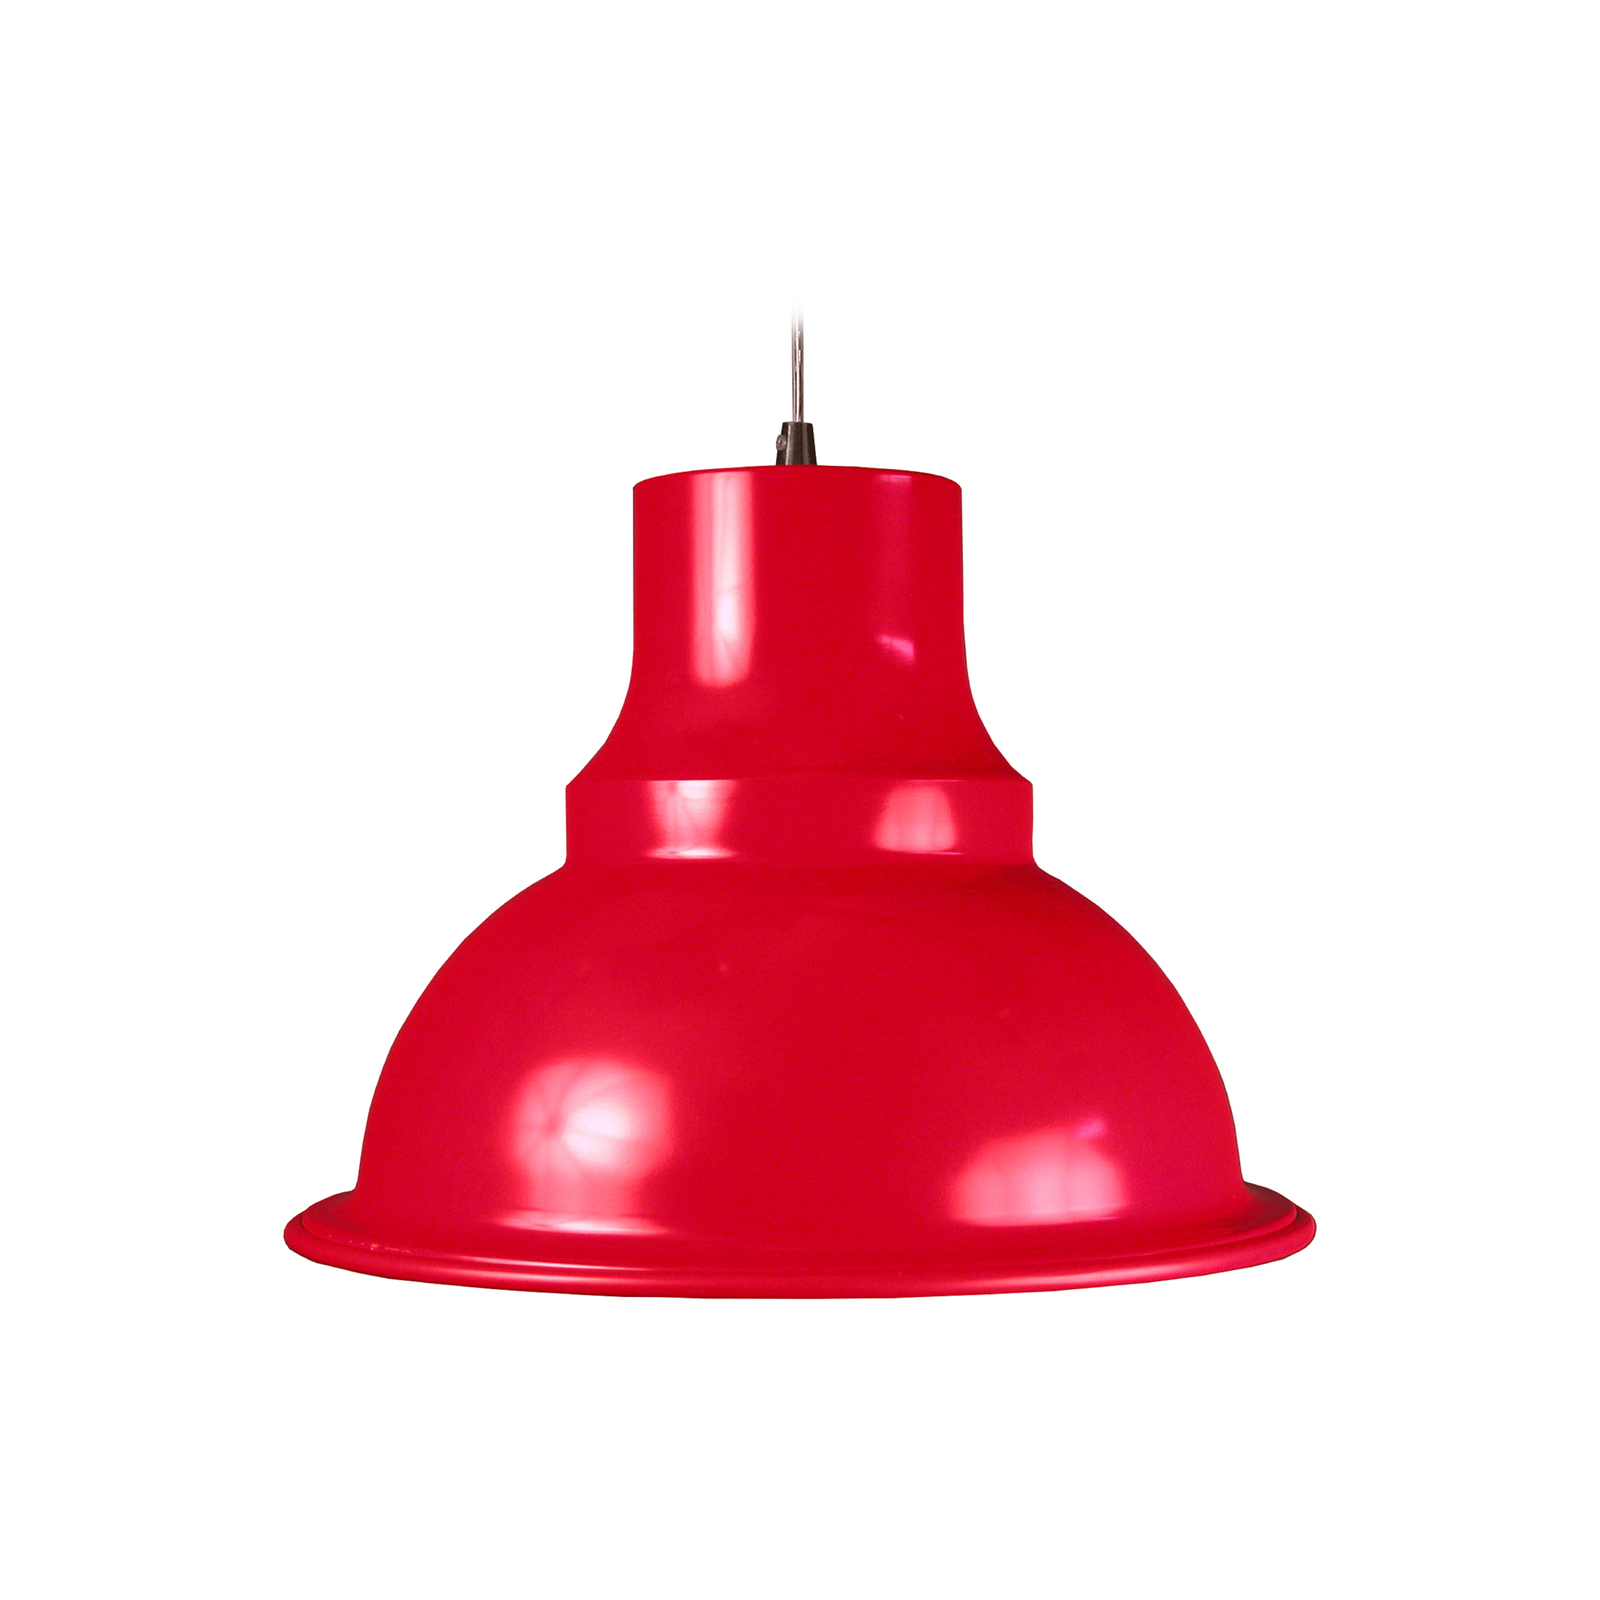 Aluminor Loft pendant light, Ø 39 cm, red